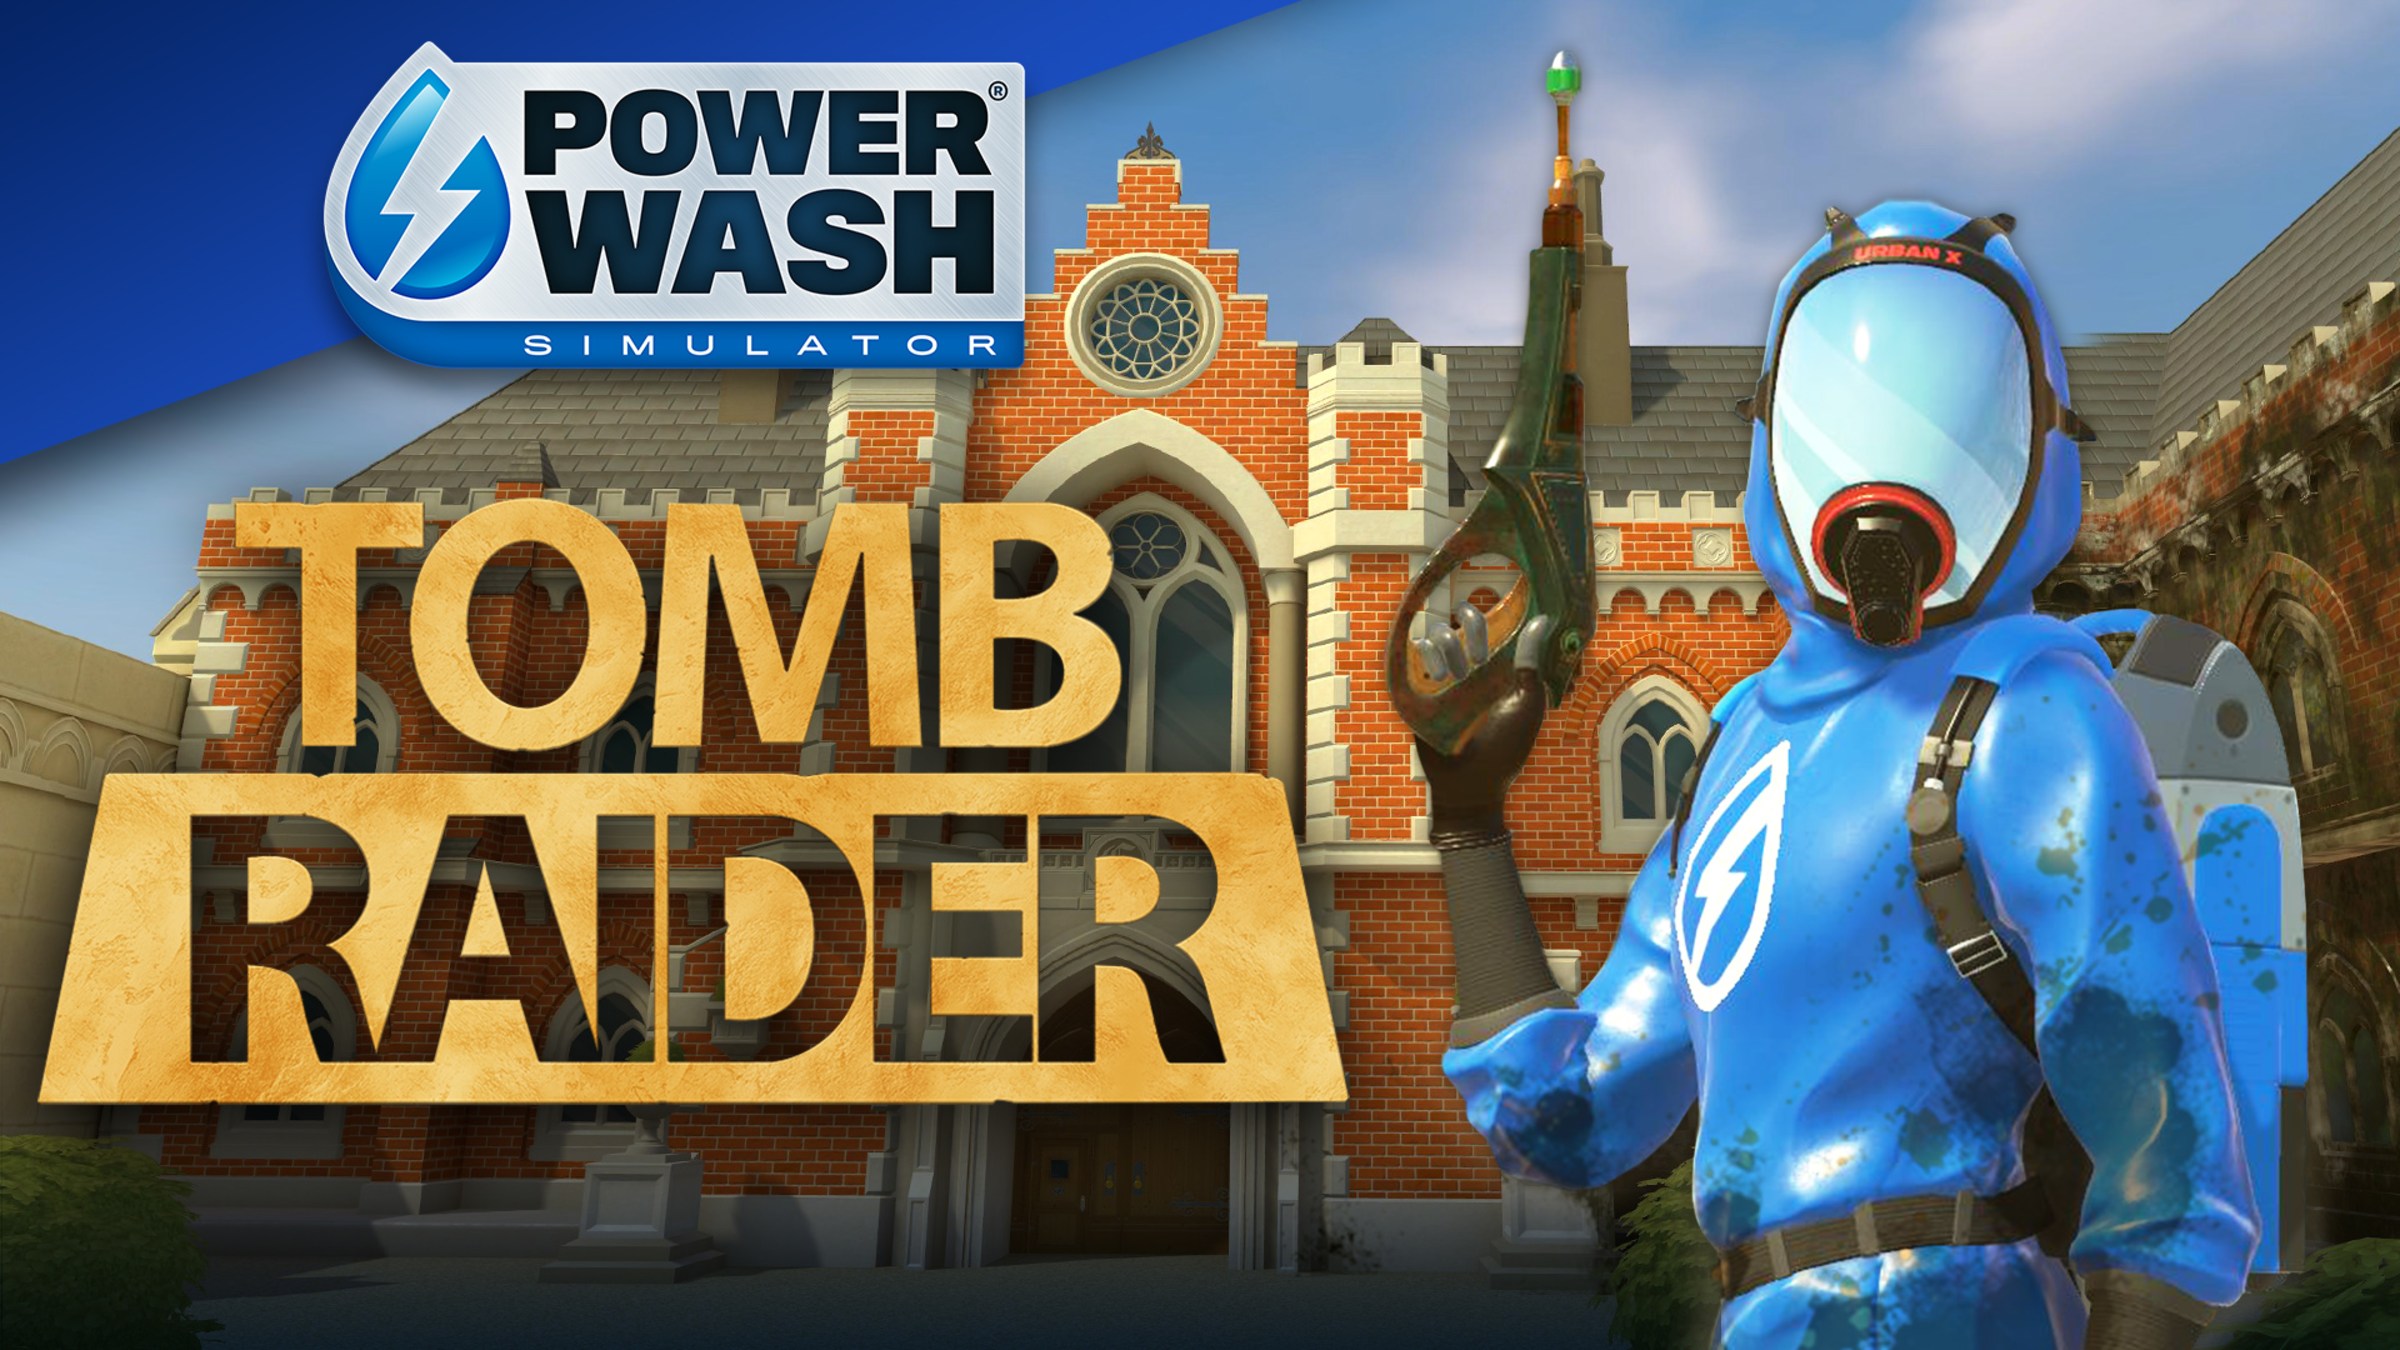 PowerWash Simulator: Tomb Raider cover or packaging material